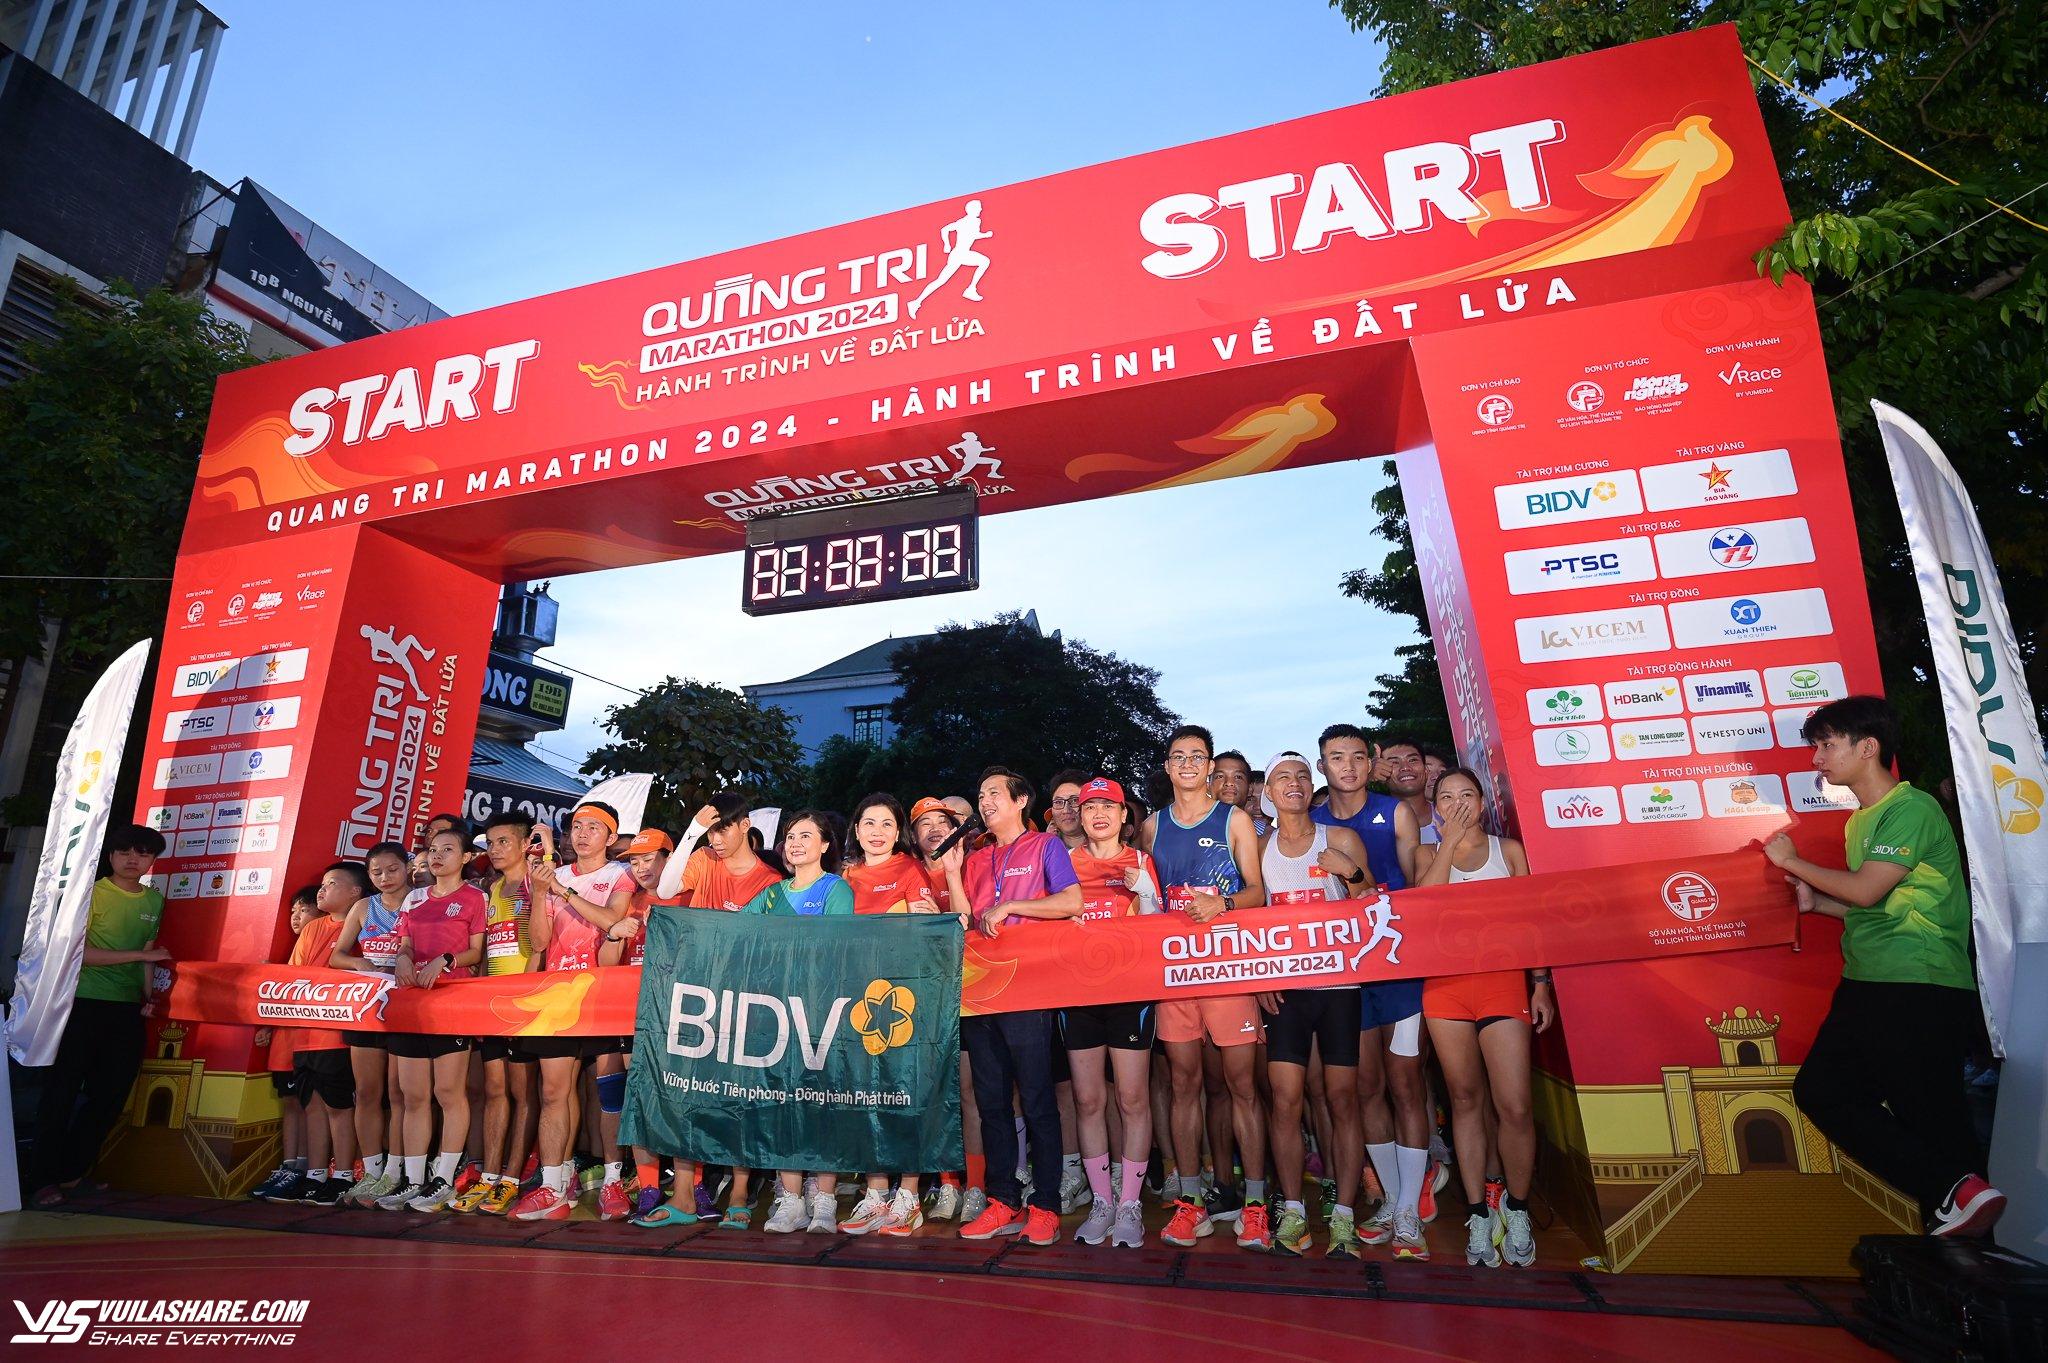 VĐV Nguyễn Trung Cường, Nguyễn Thị Oanh về nhất cự ly 21 km giải Quảng Trị Marathon- Ảnh 1.